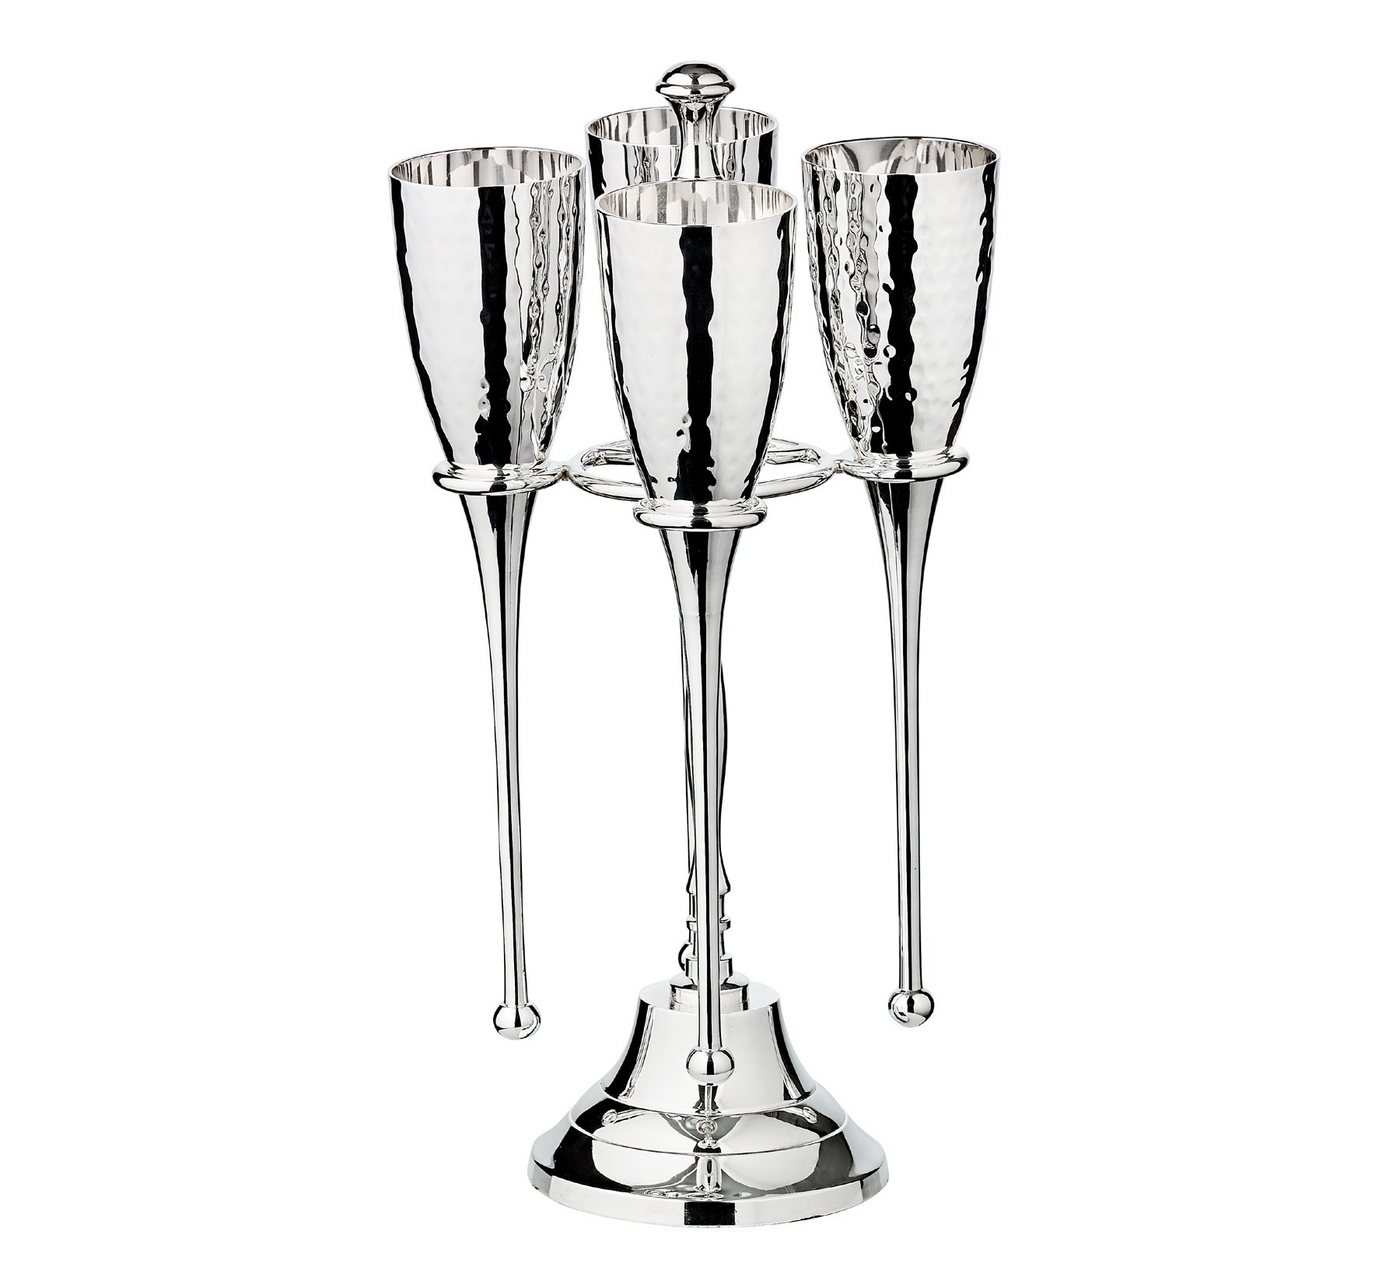 EDZARD Gläser-Set Didi, Stahl, Sektflöten mit Glanz-Finish, Sektgläser-Set für Champagner, Sektkelche mit Füllmenge 200 ml, Höhe 23 cm, versilbert von EDZARD